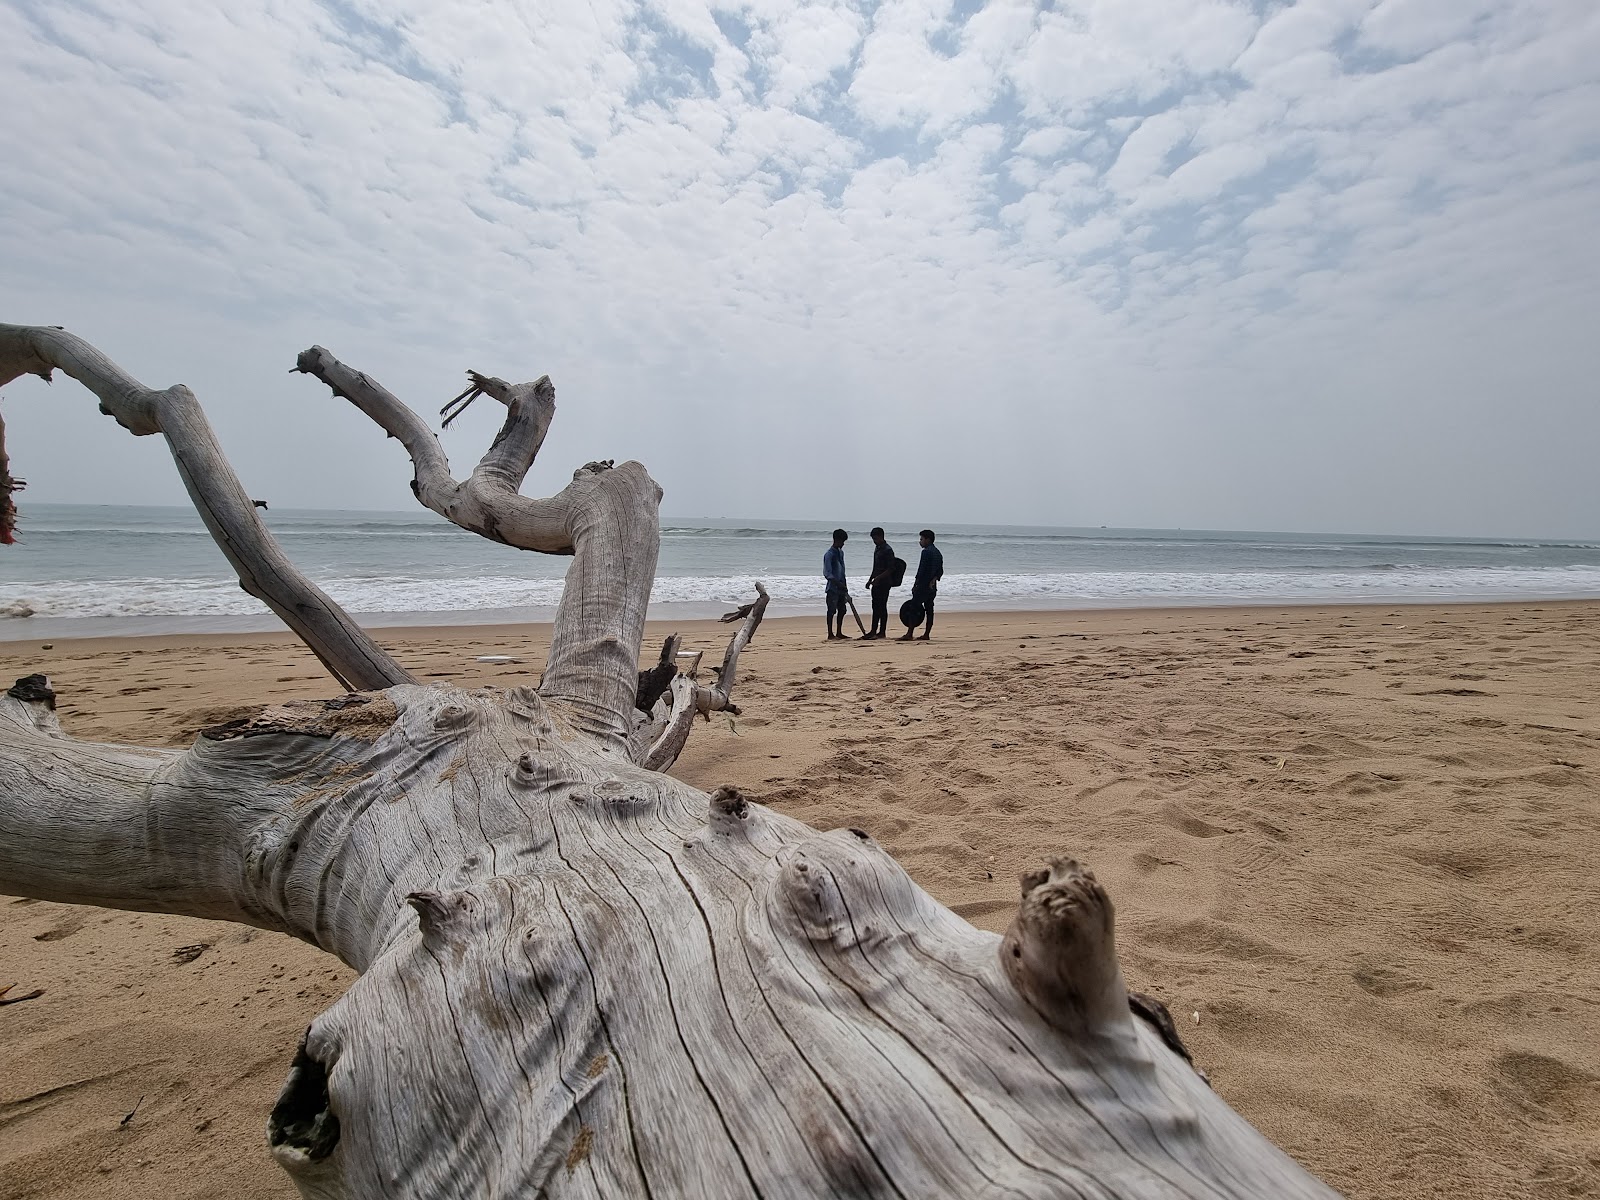 Valokuva Balighai Beachista. sijaitsee luonnonalueella